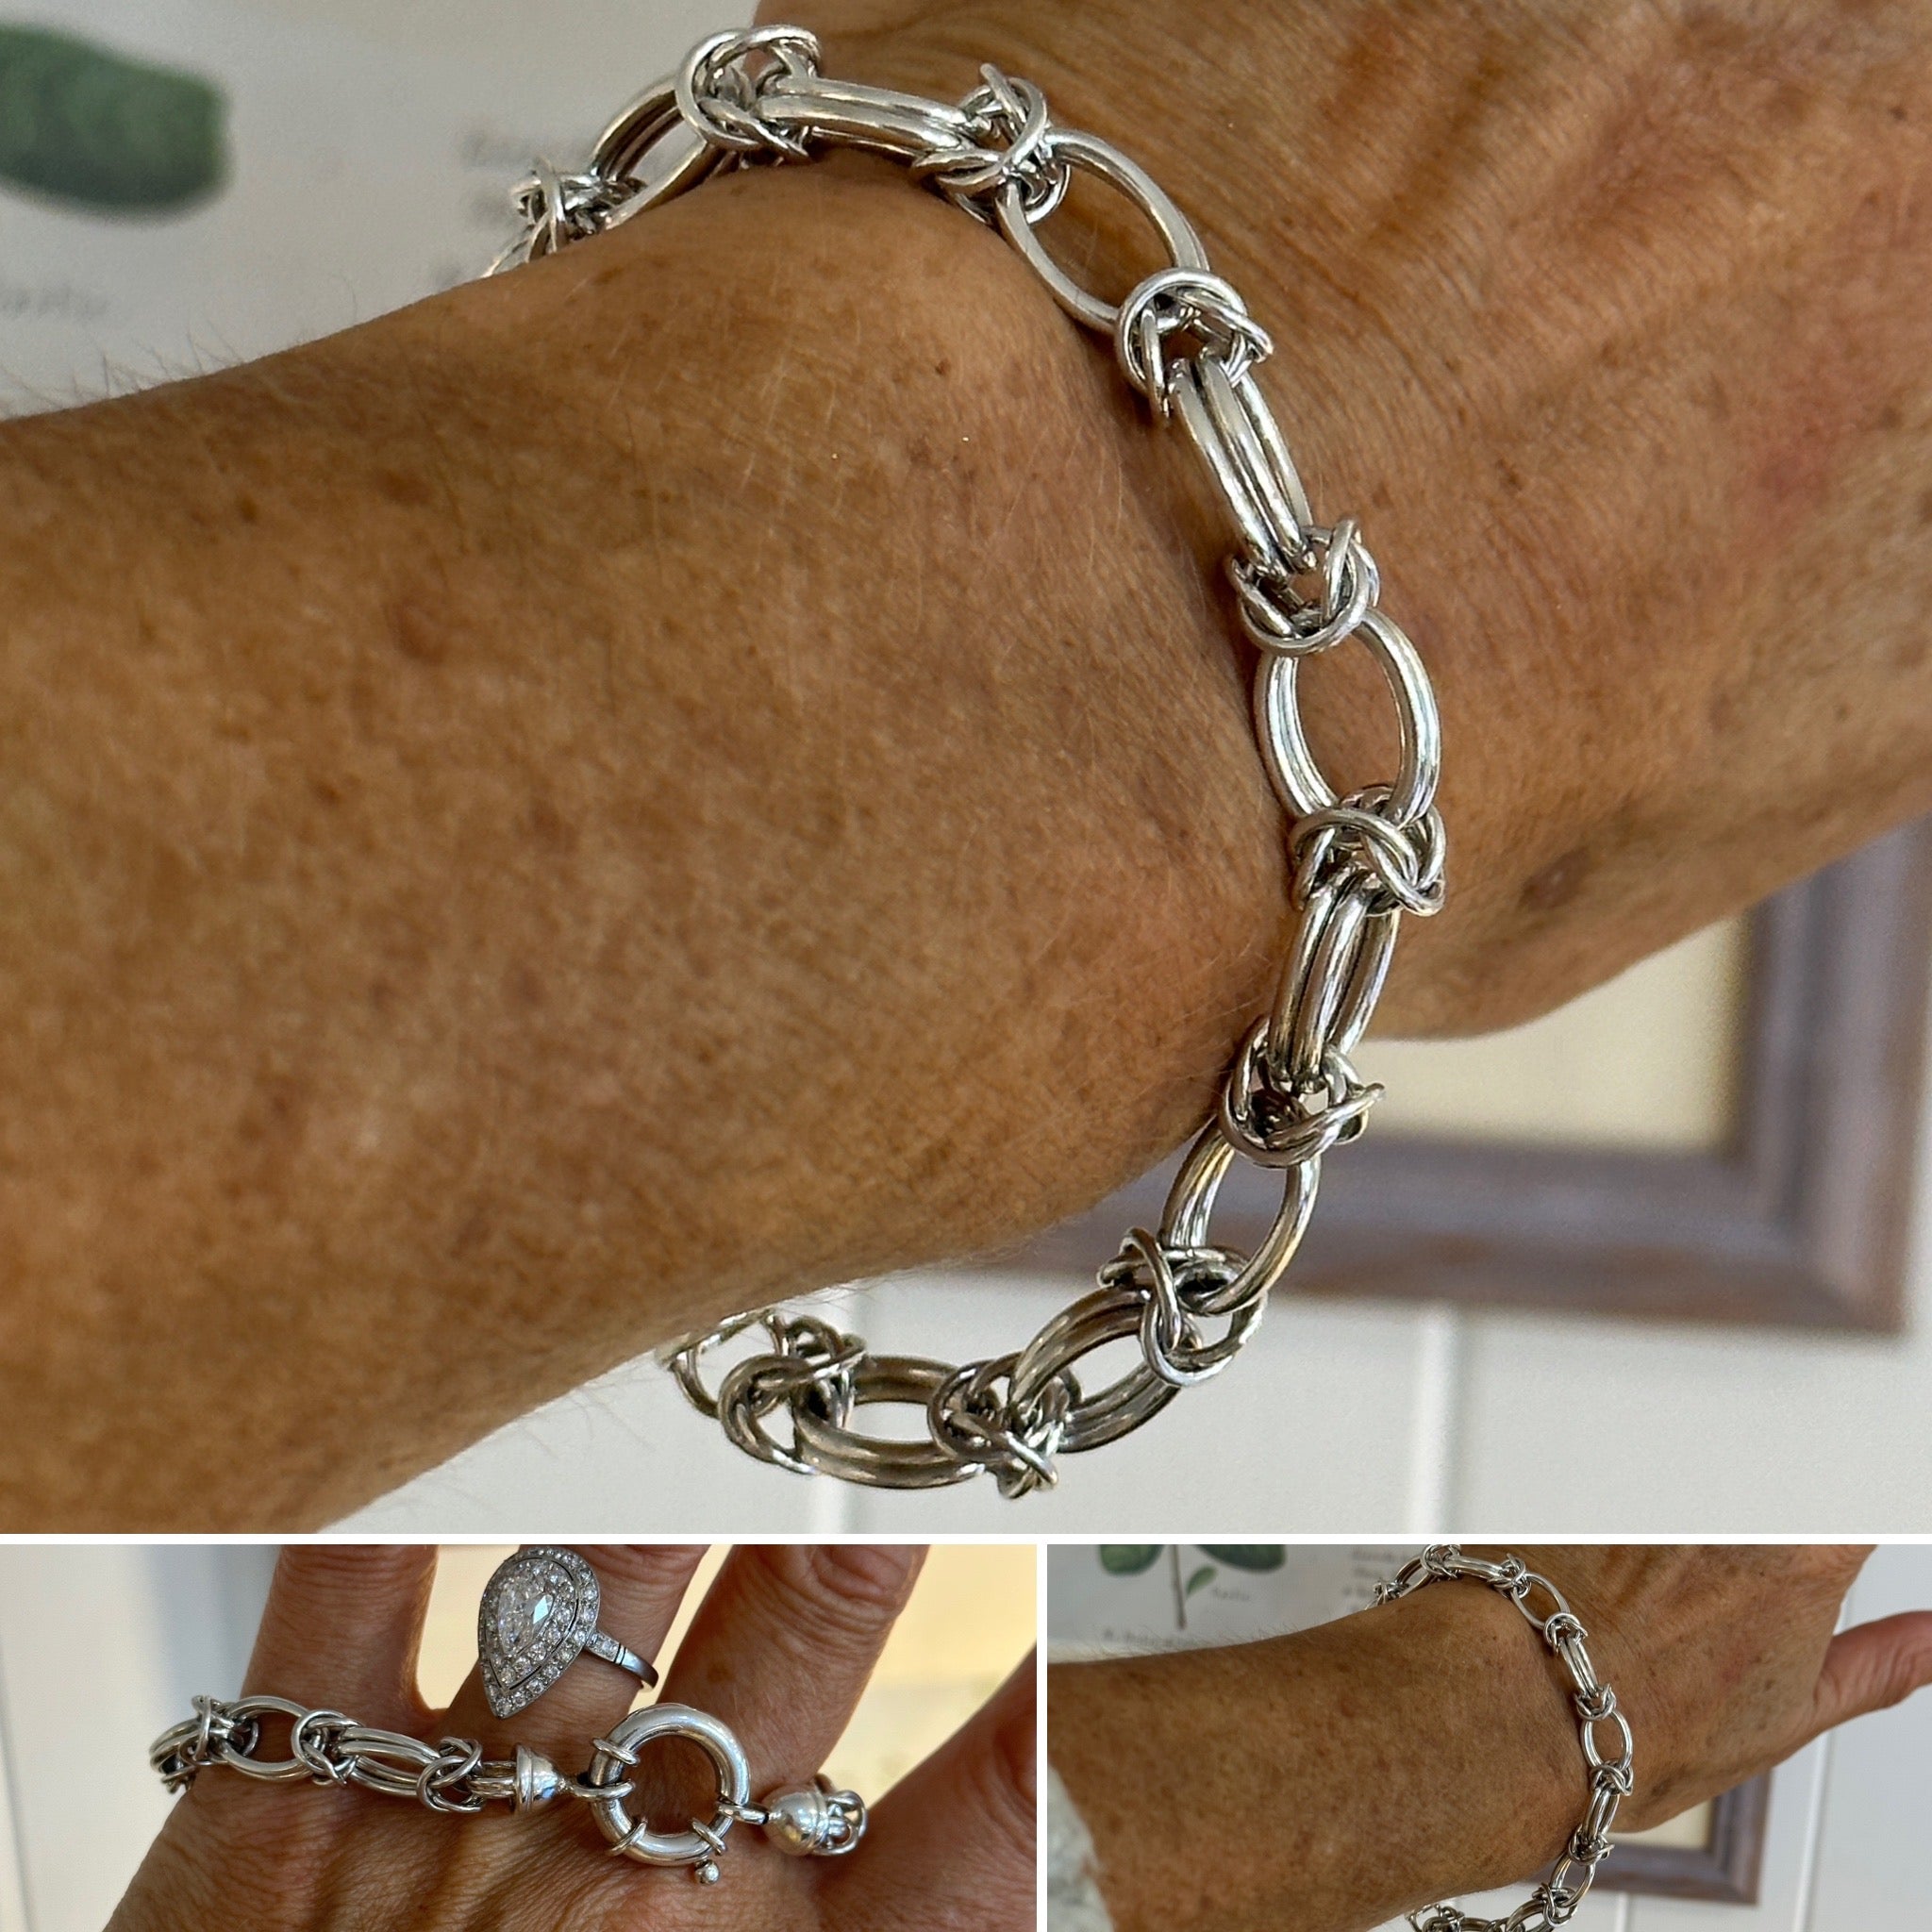 Erin: a silver bracelet